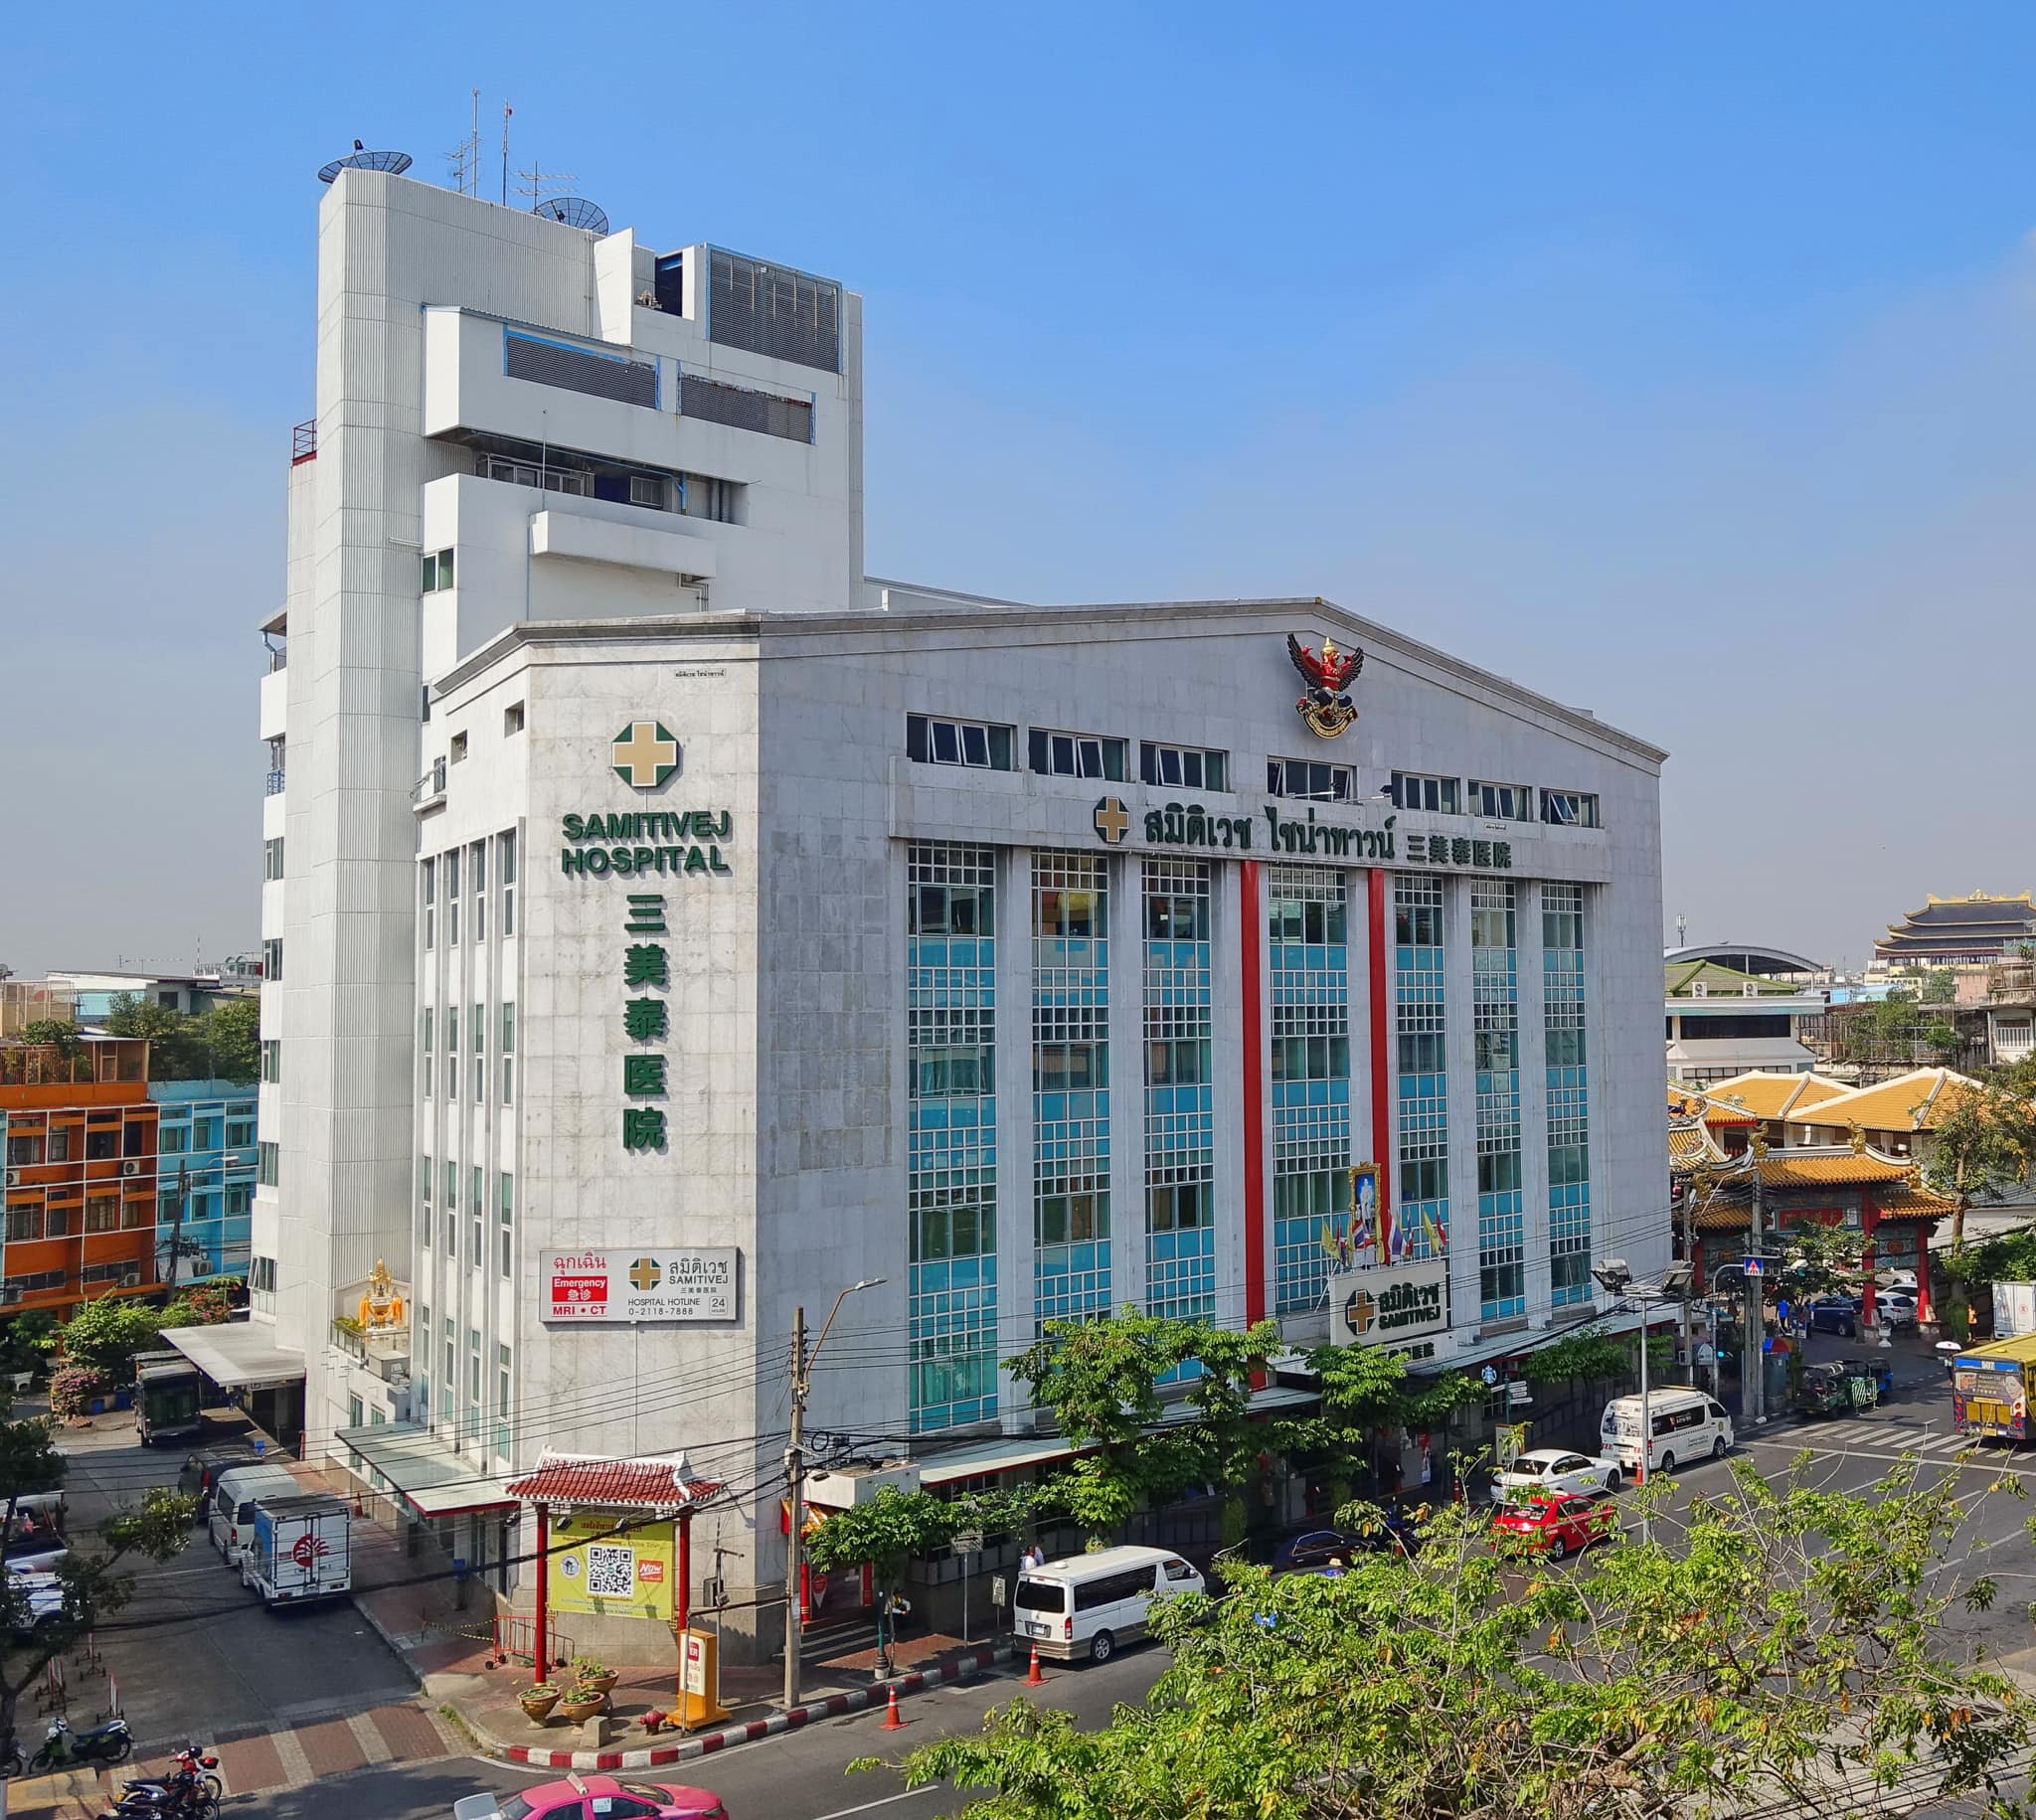 Samitivej Hospital China Town